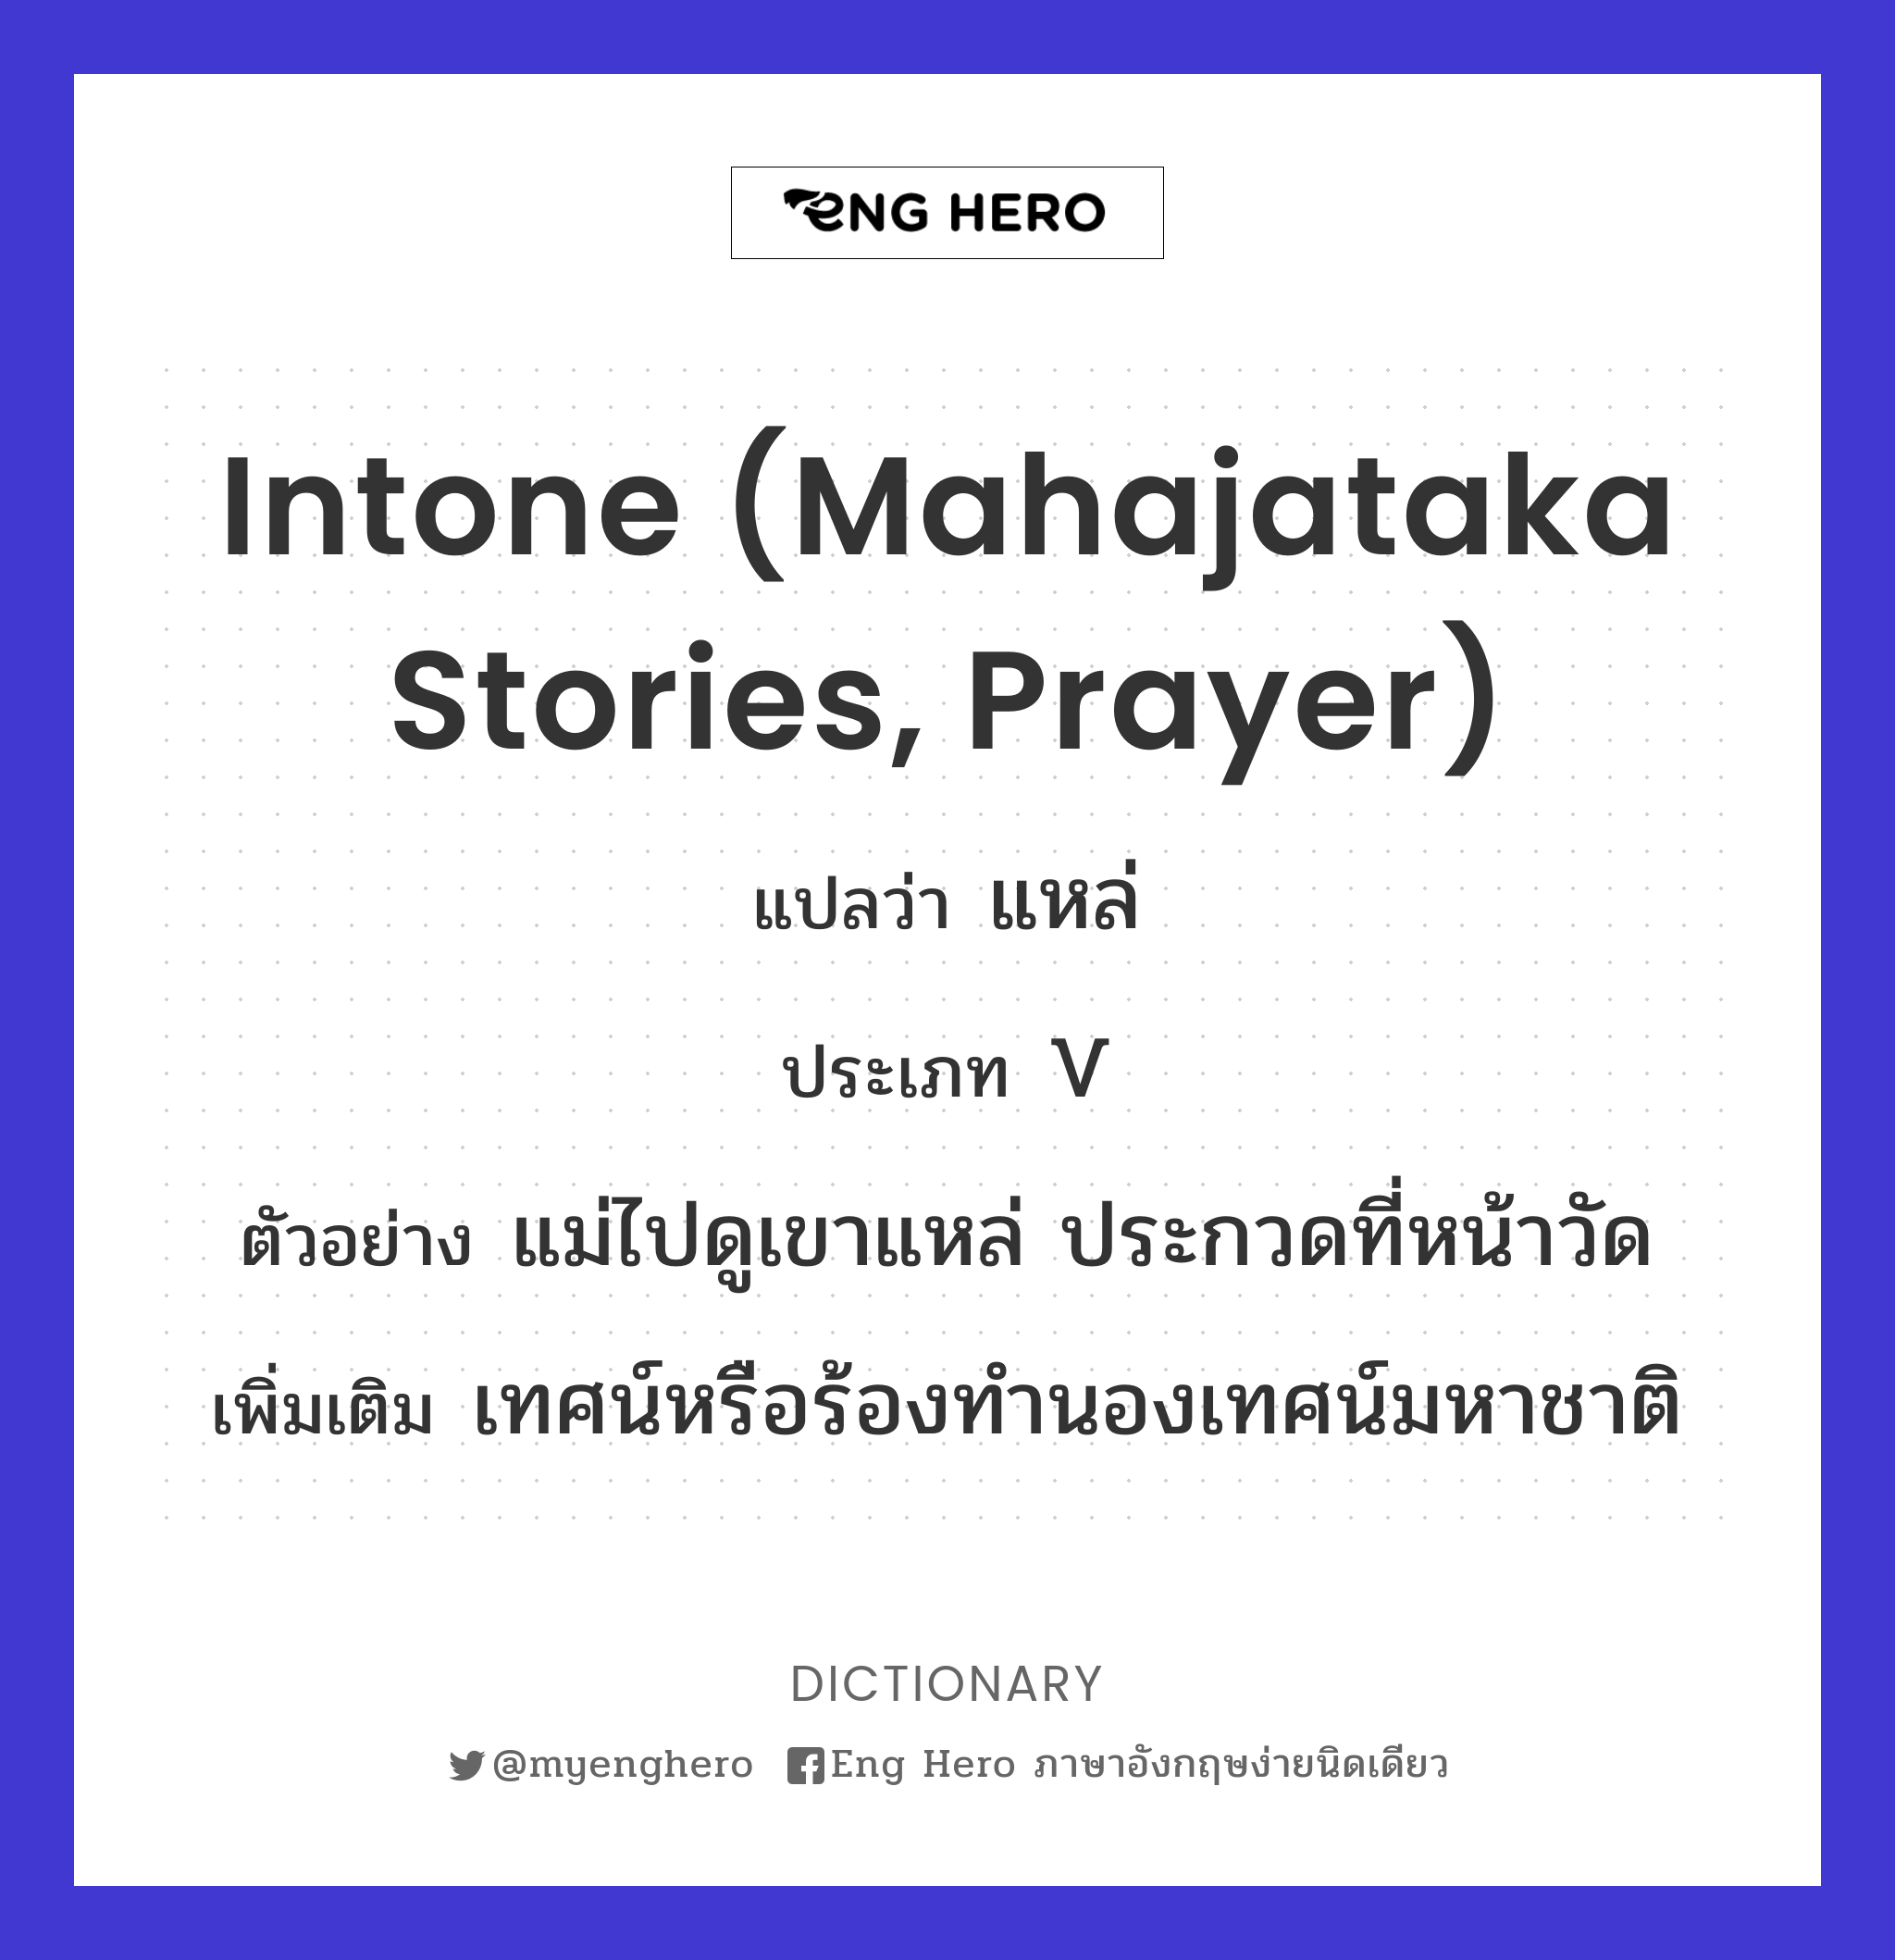 intone (Mahajataka stories, prayer)